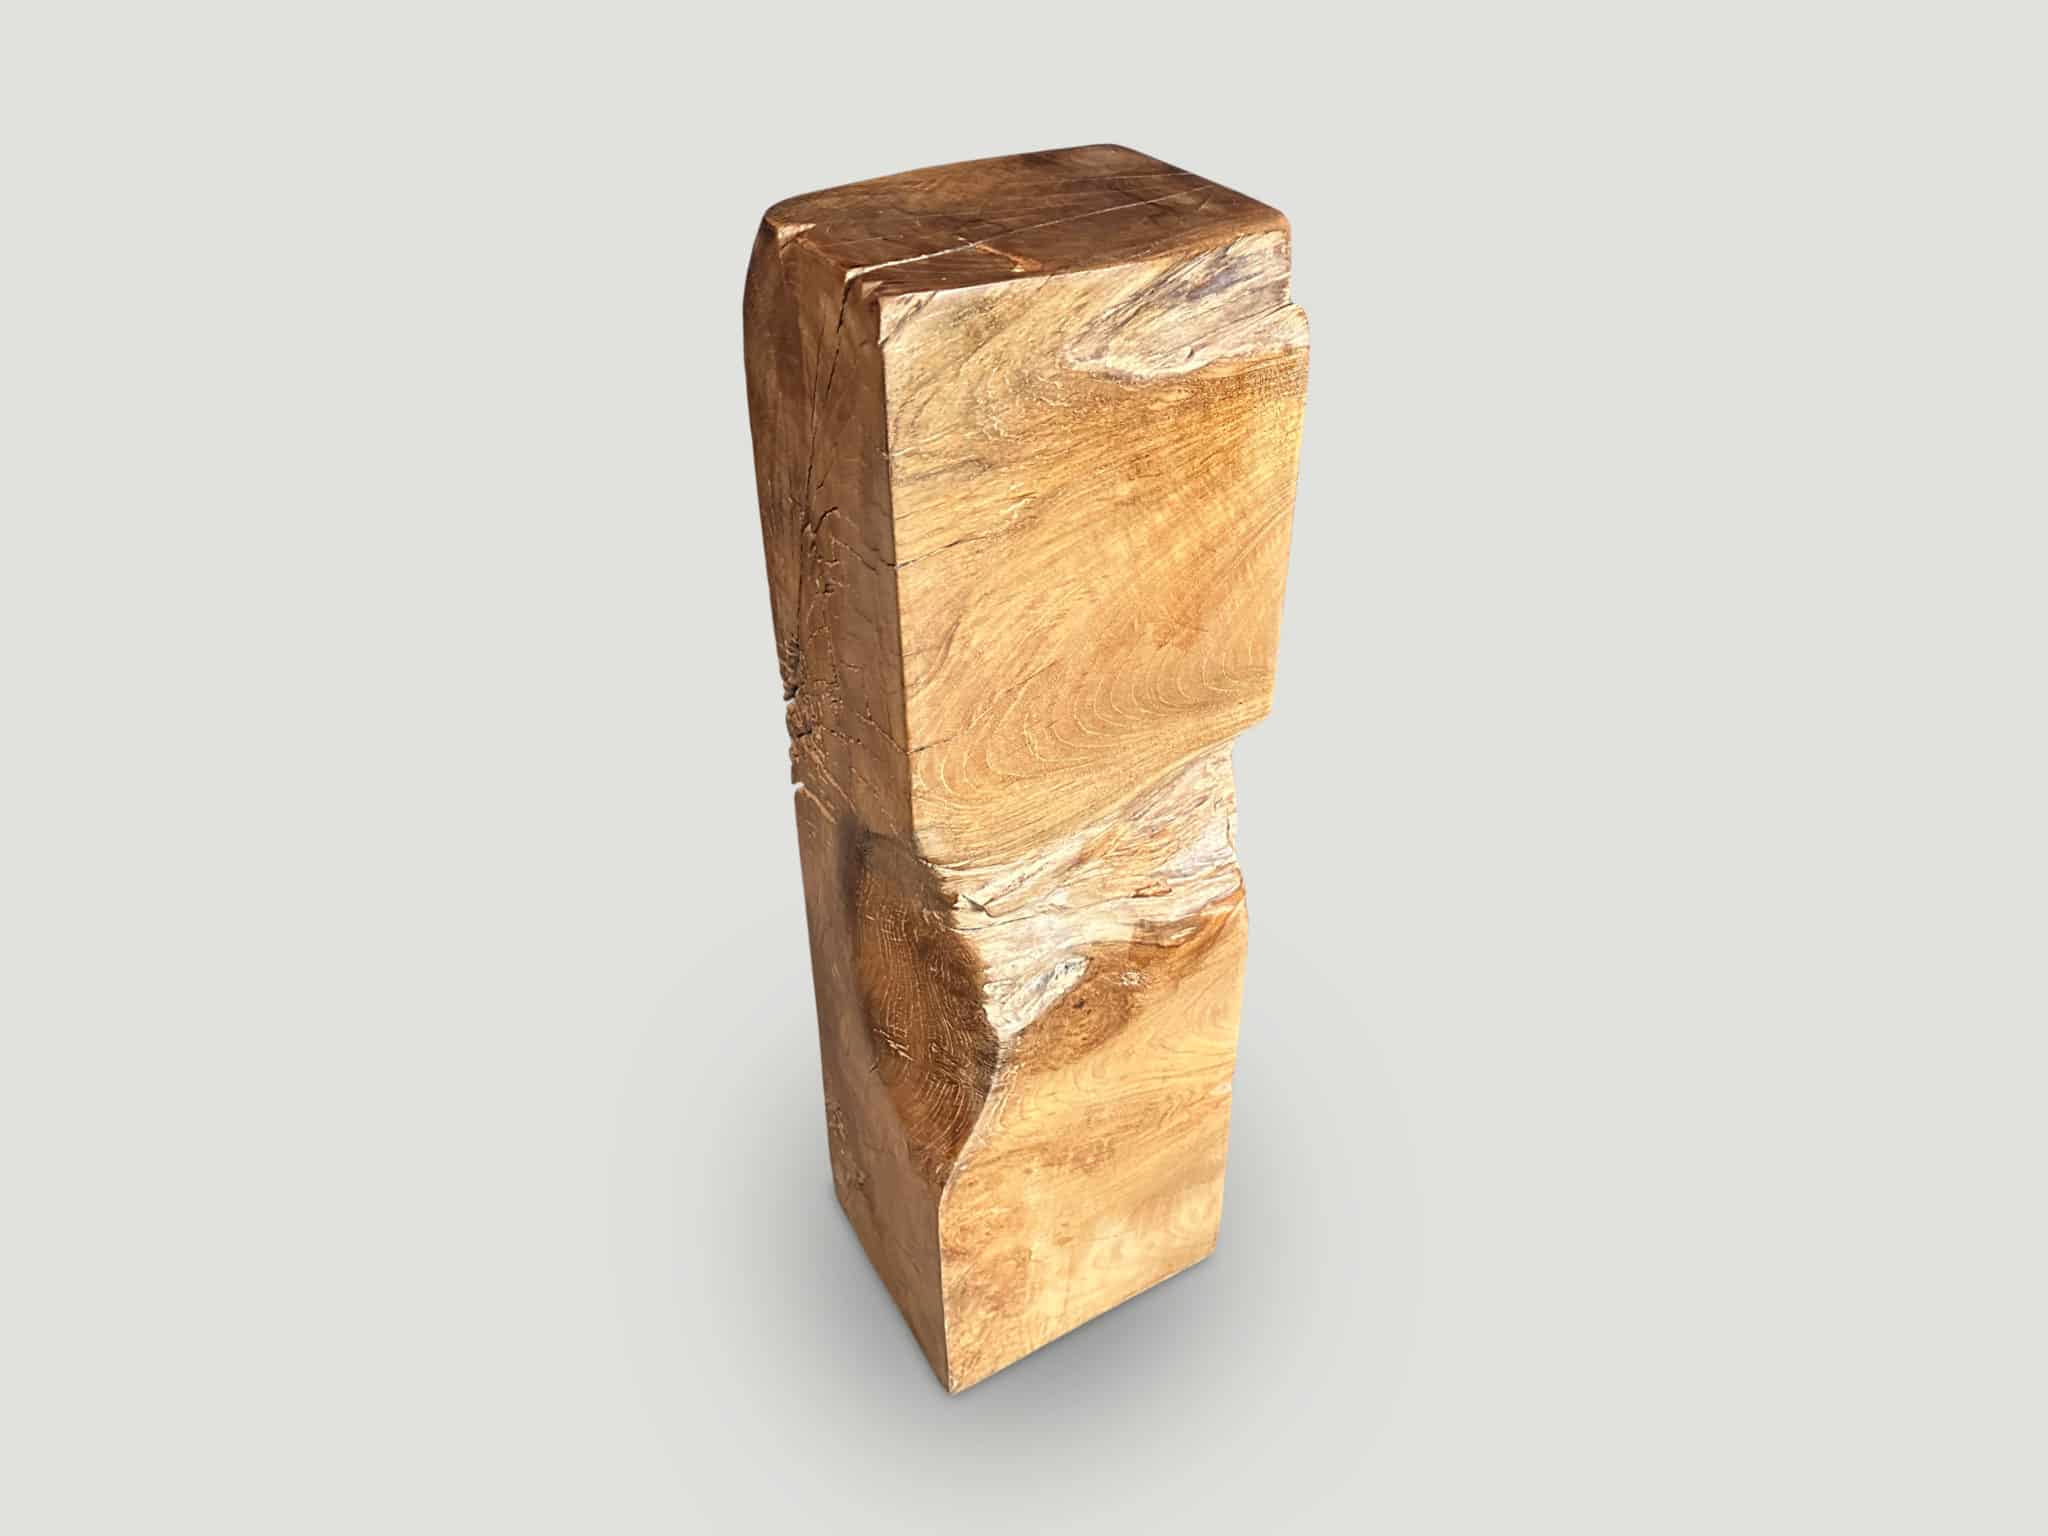 Reclaimed teak wood pedestal or side table